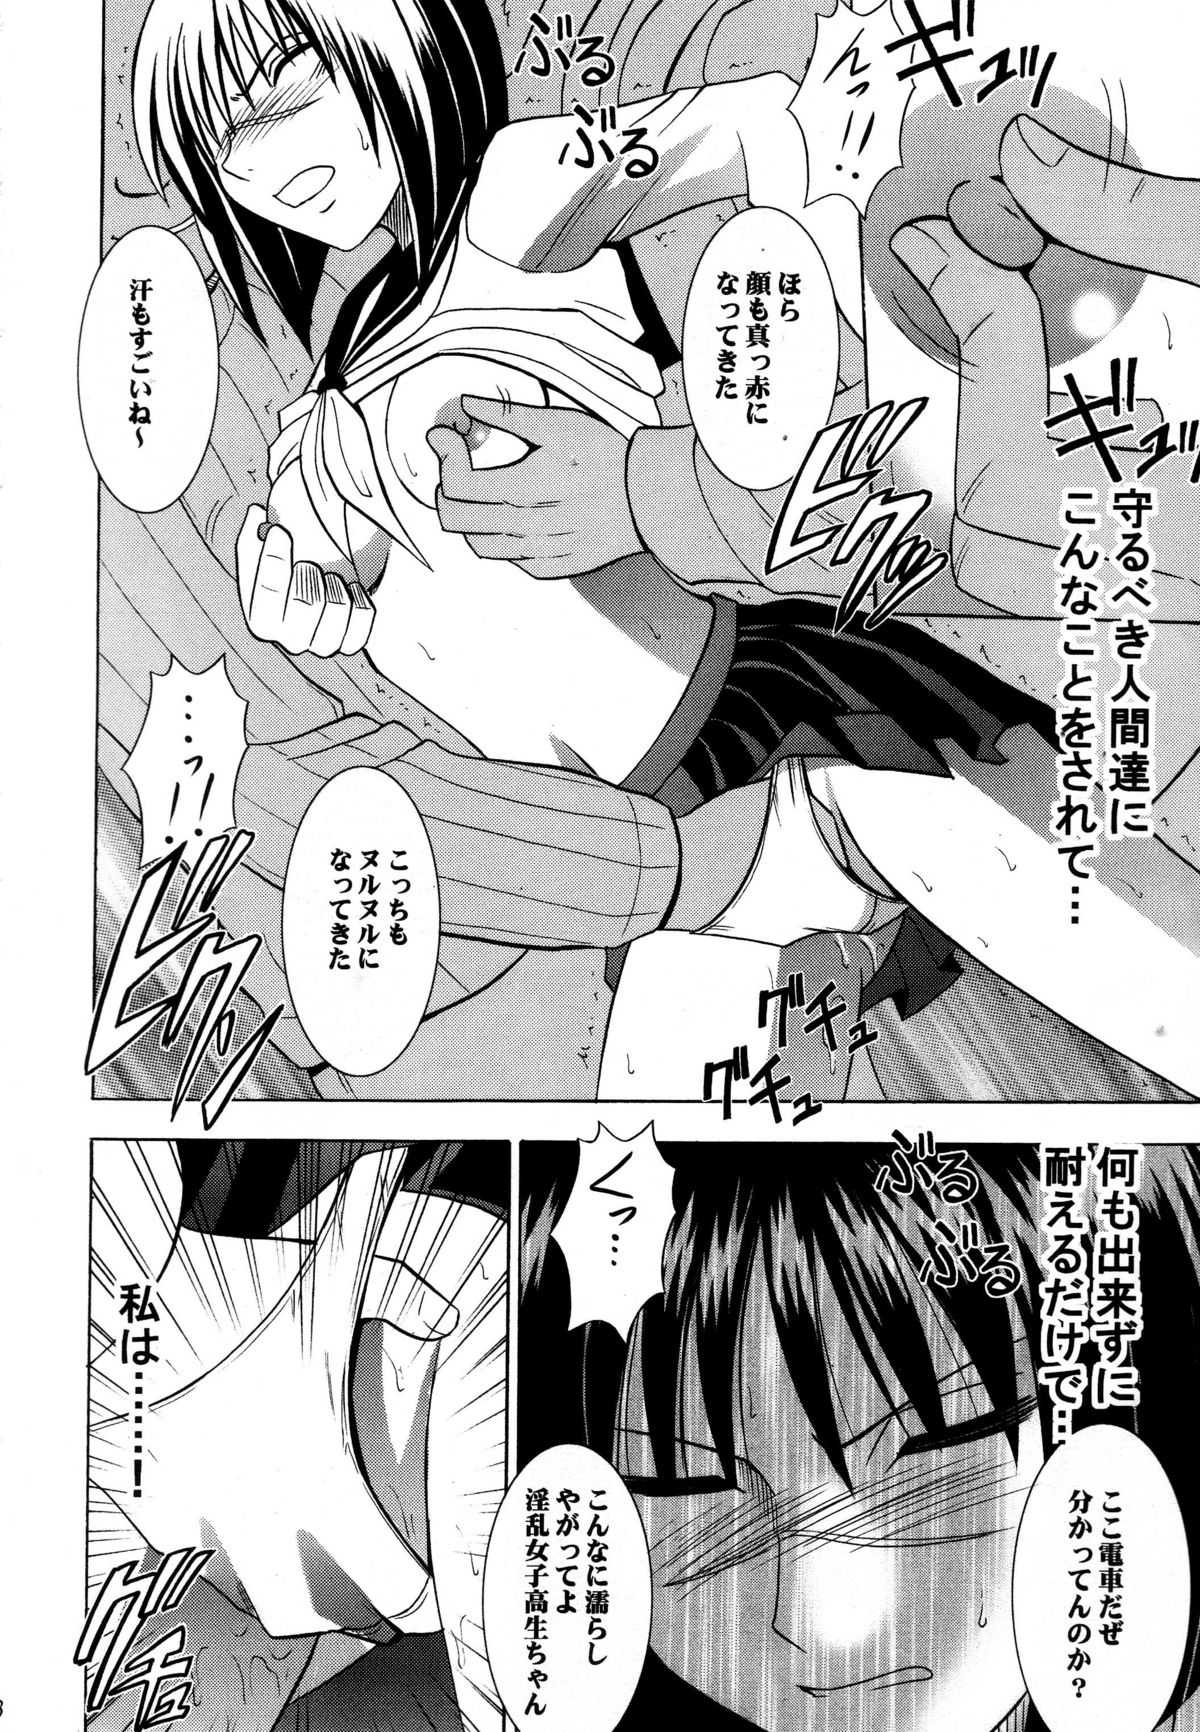 [Crimson Comics] Tatakau Toutoki Onna 1 (Busou Renkin) 